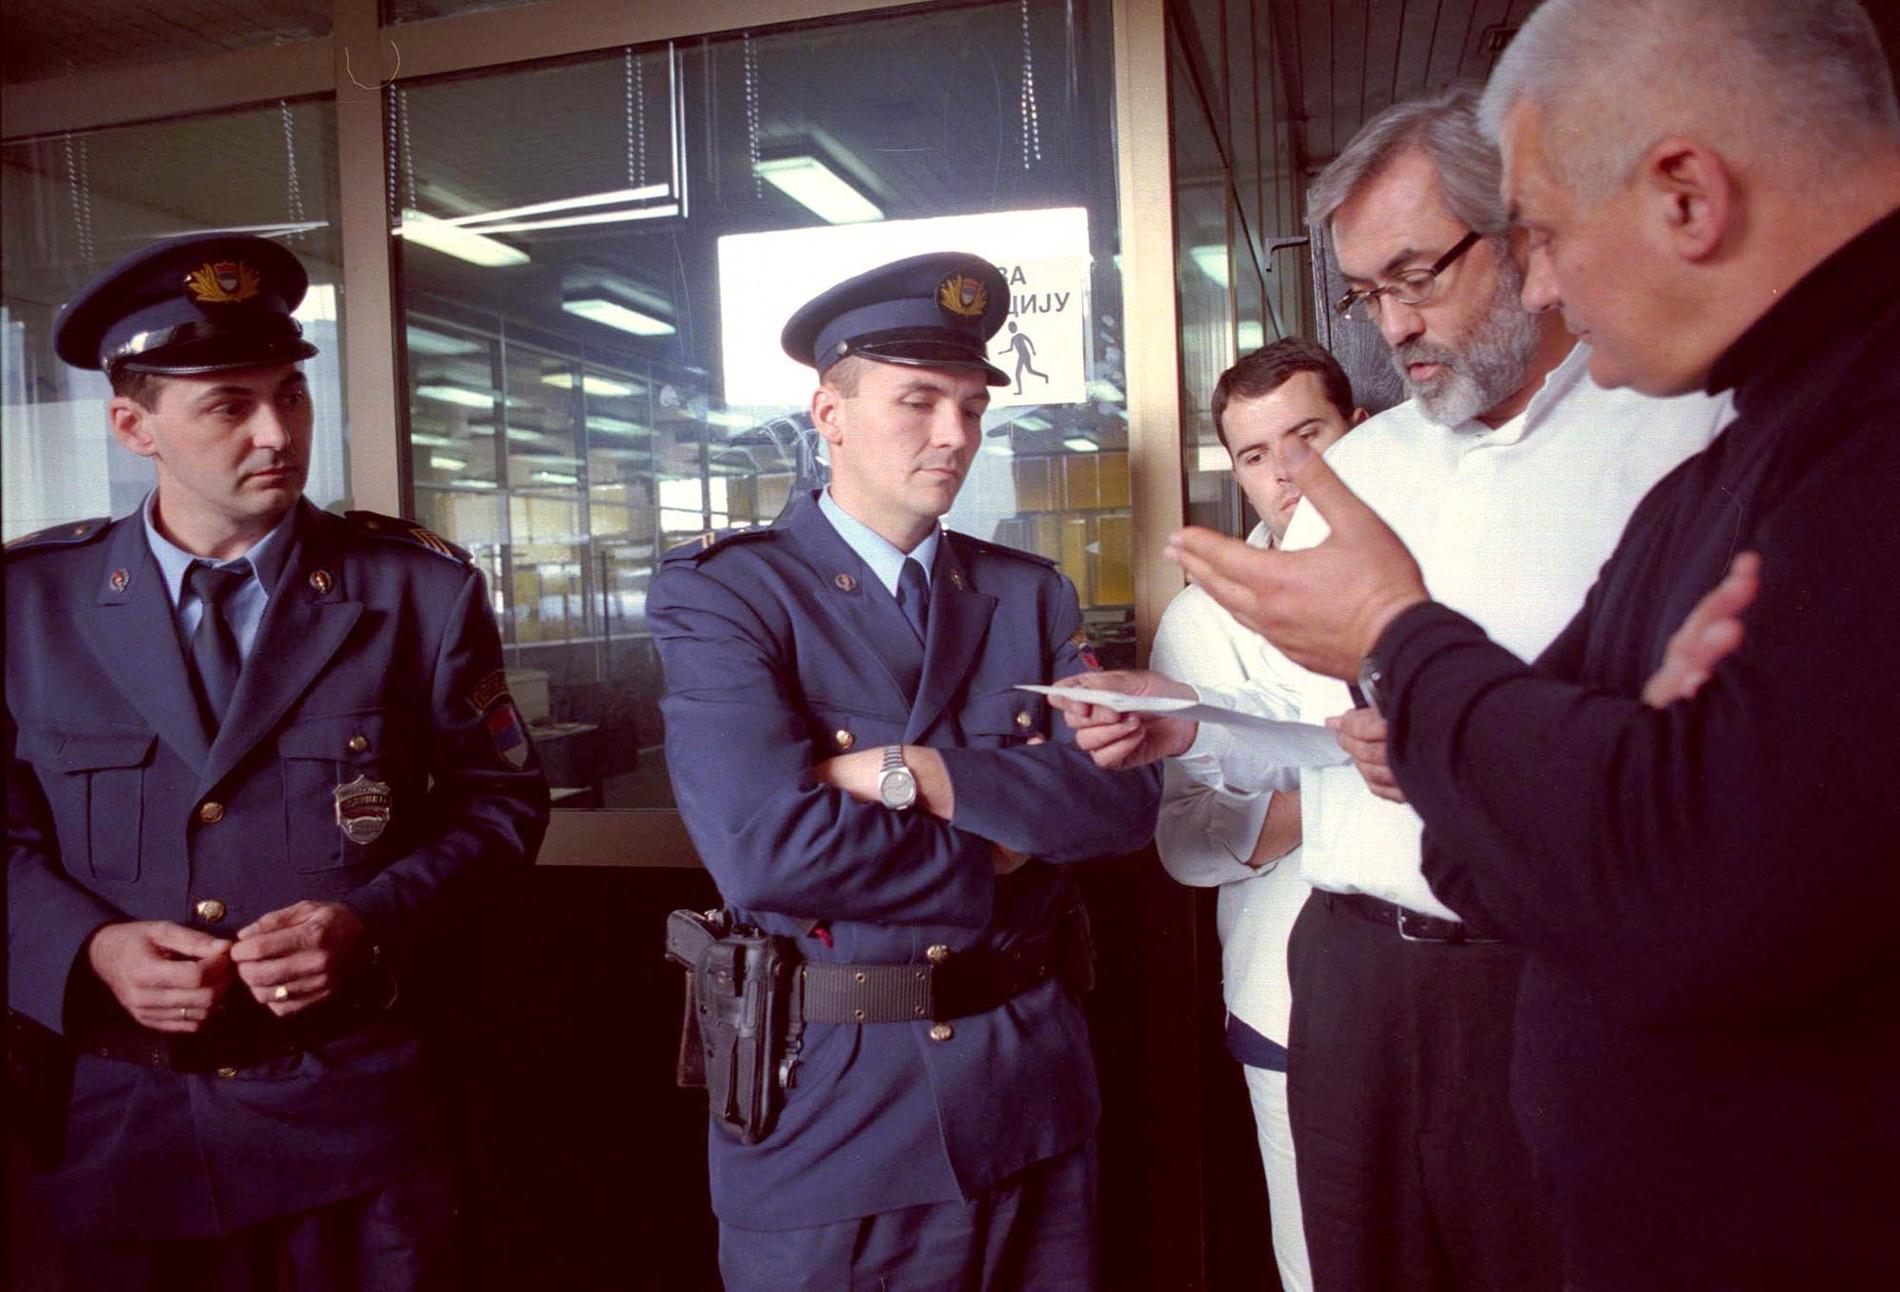 Slavko Curuvija, i vit skjorta, på Dnevi Telegraf i oktober 1998 då tidningen stängdes av regeringen. Arkivbild.